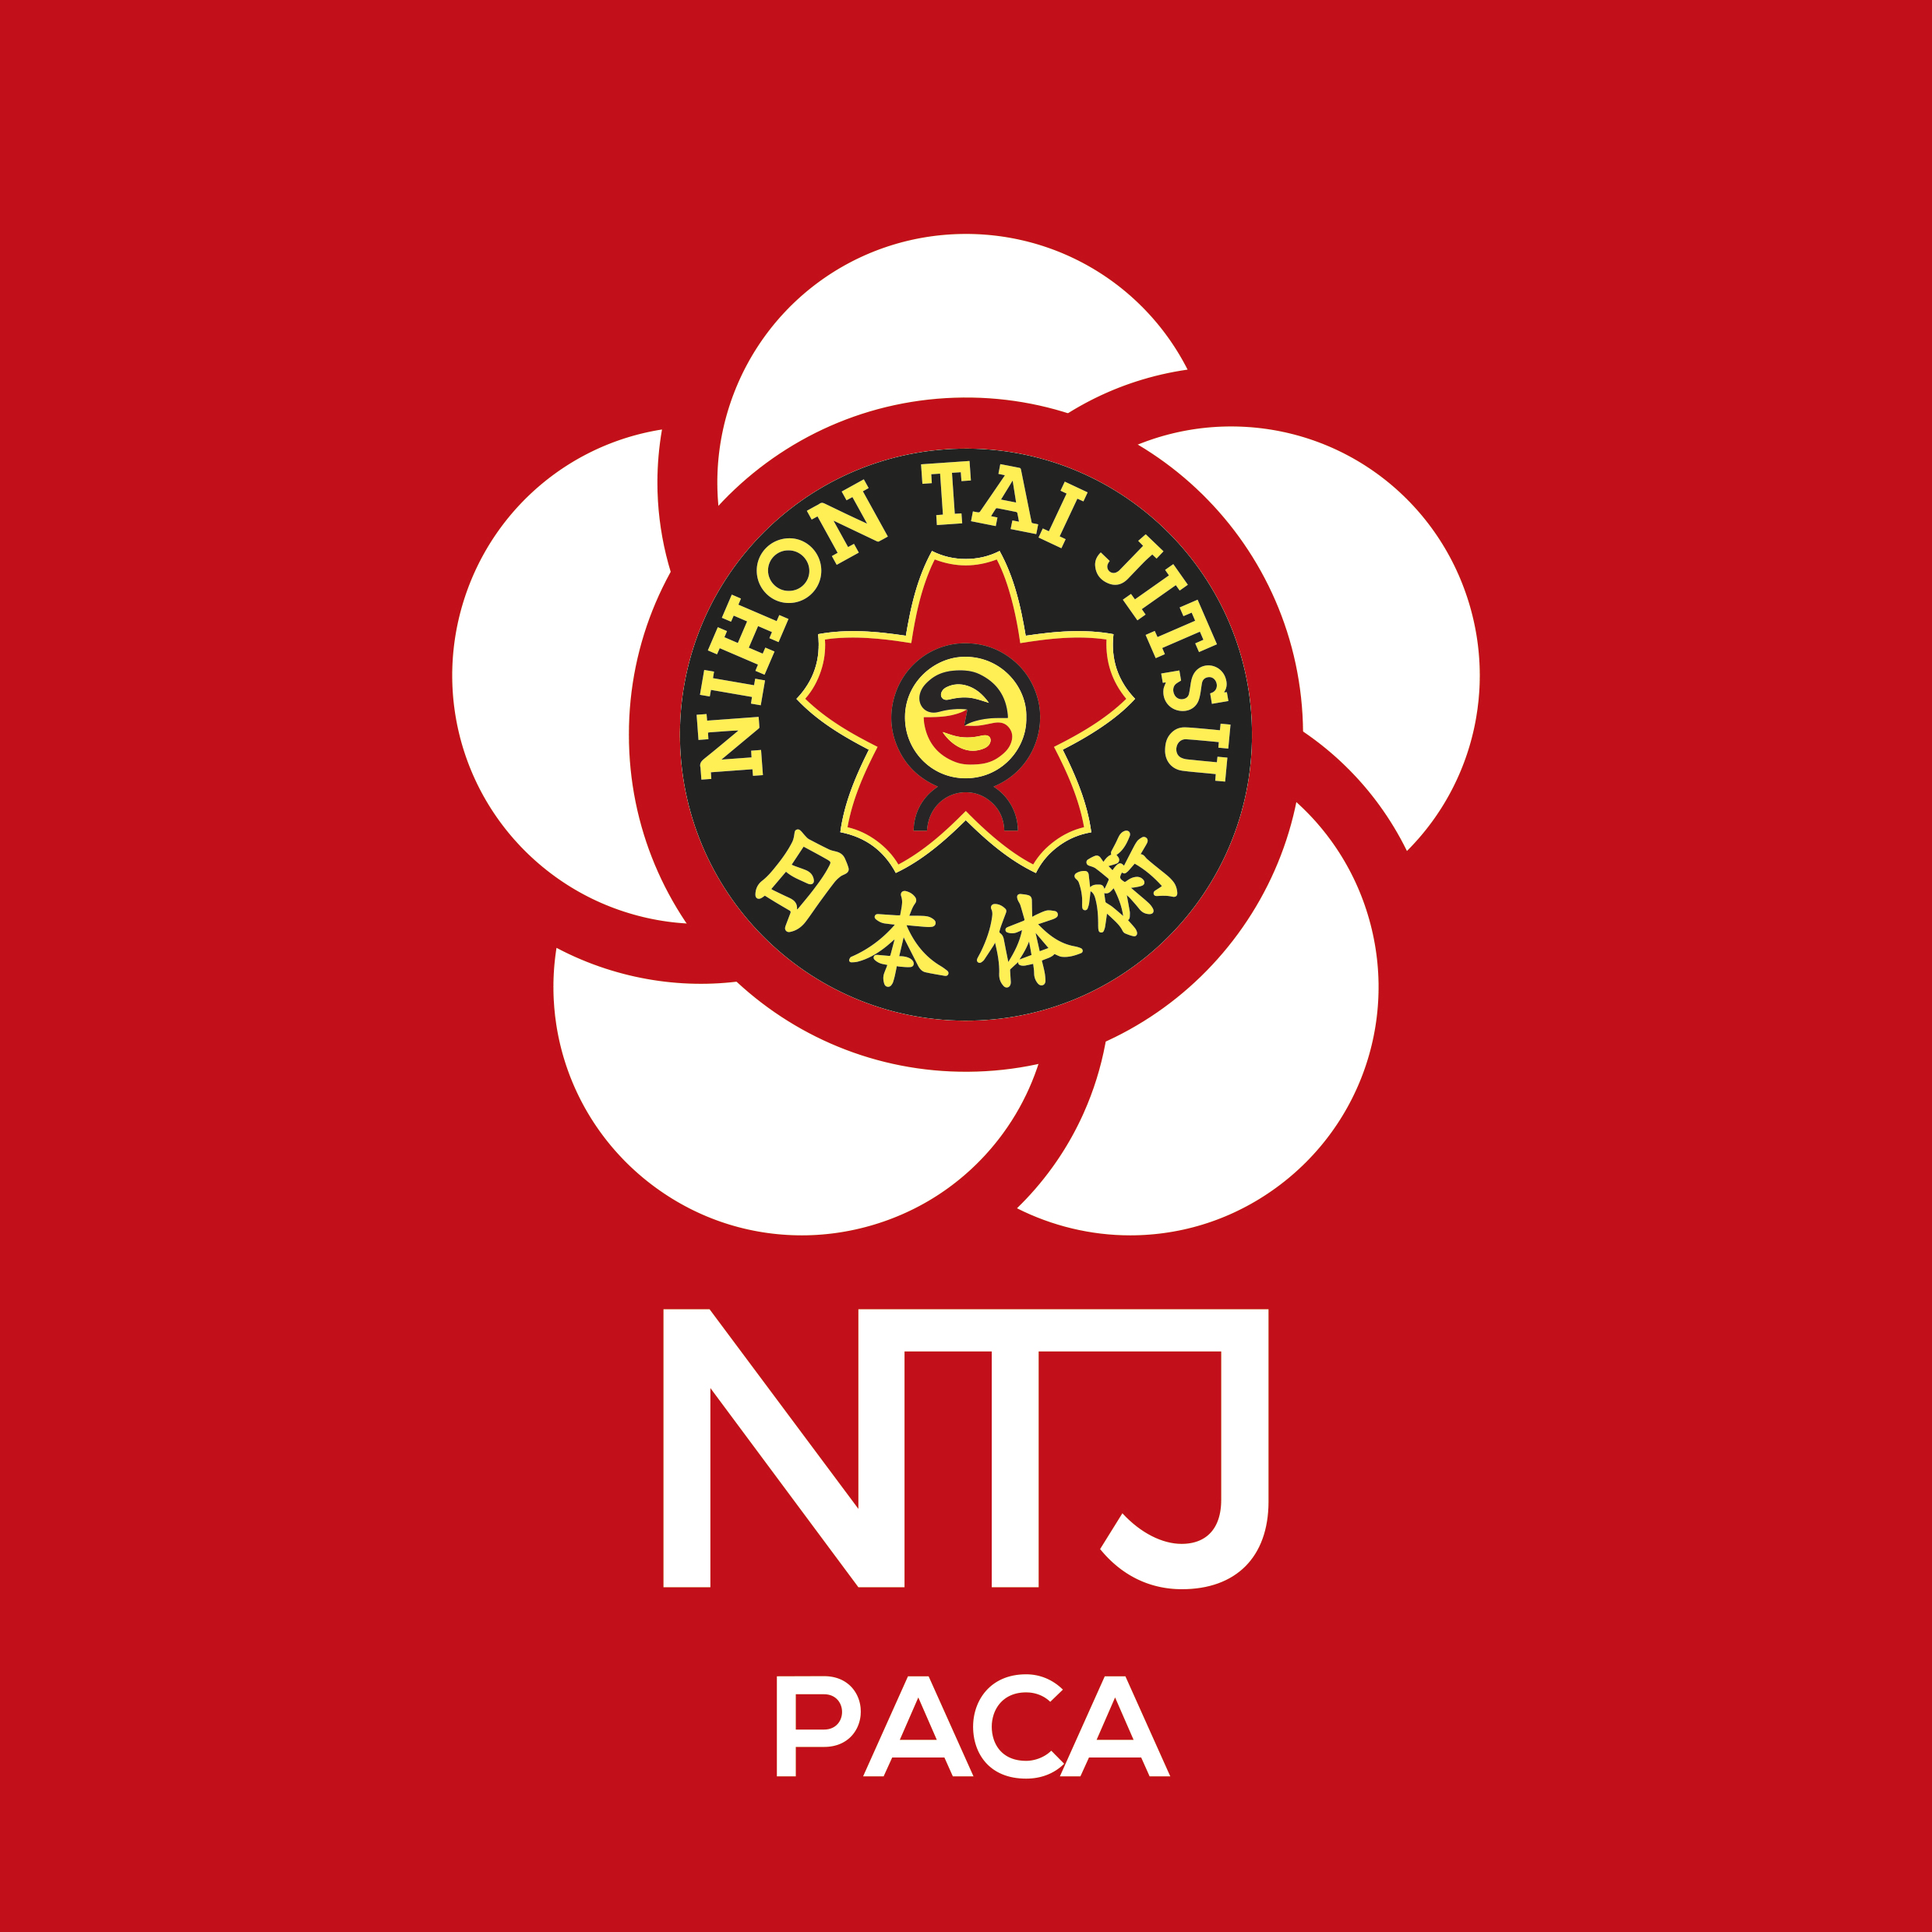 NTJ region PACA logo rvb